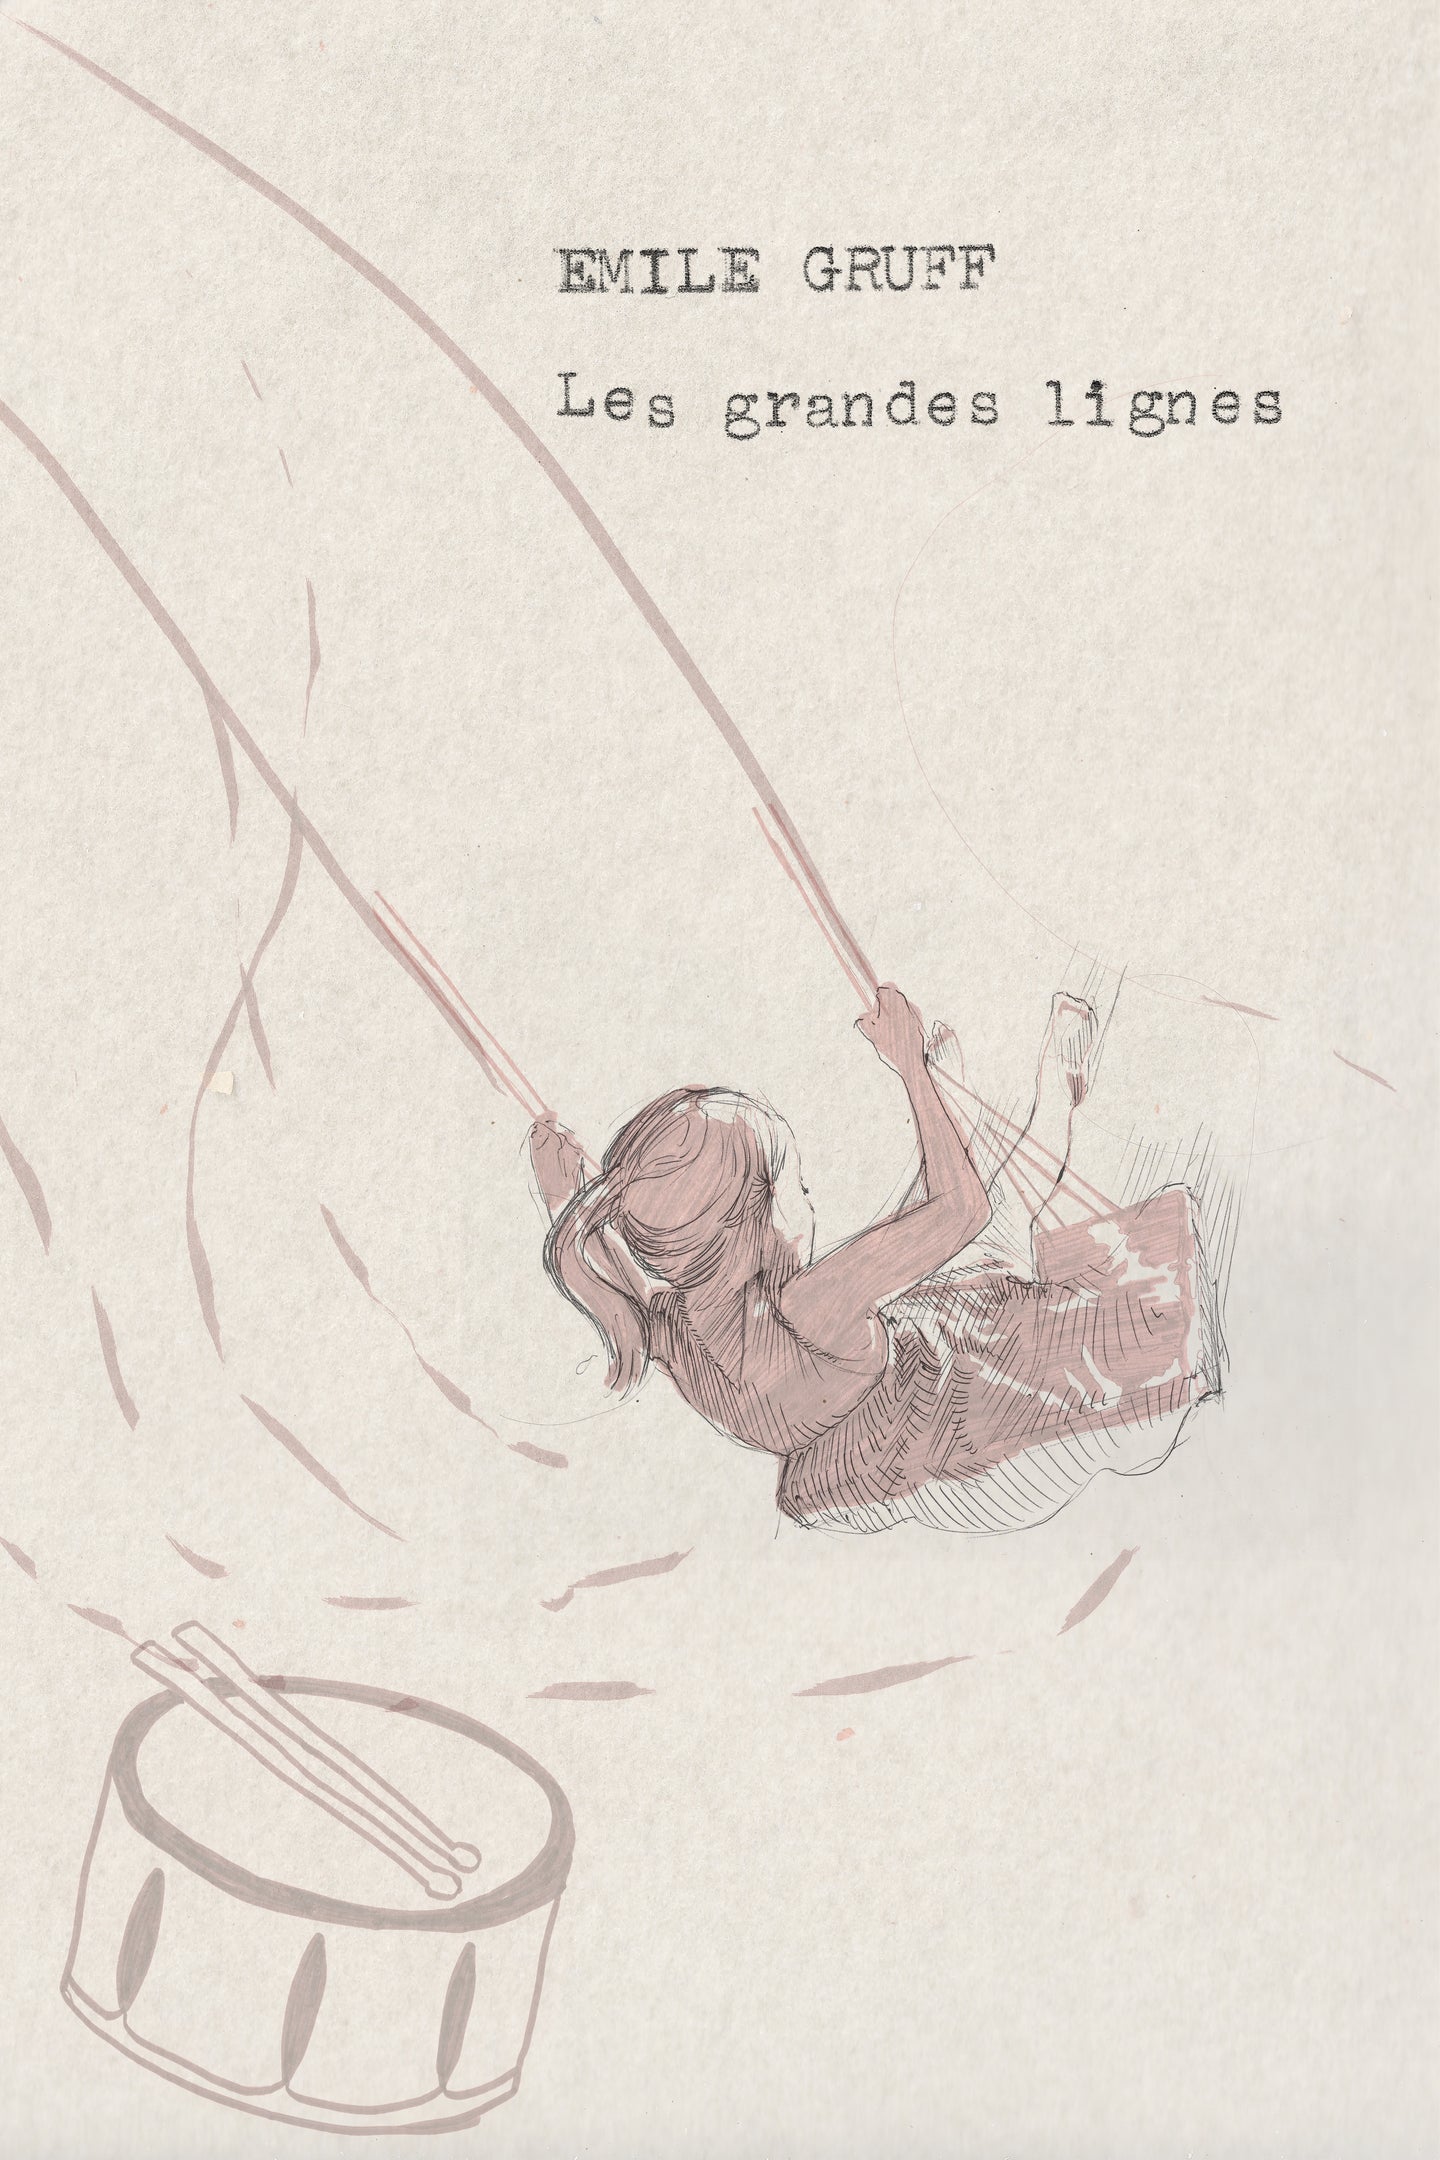 Gruff, Émile - Les Grandes lignes (LP) -- Édition limitée